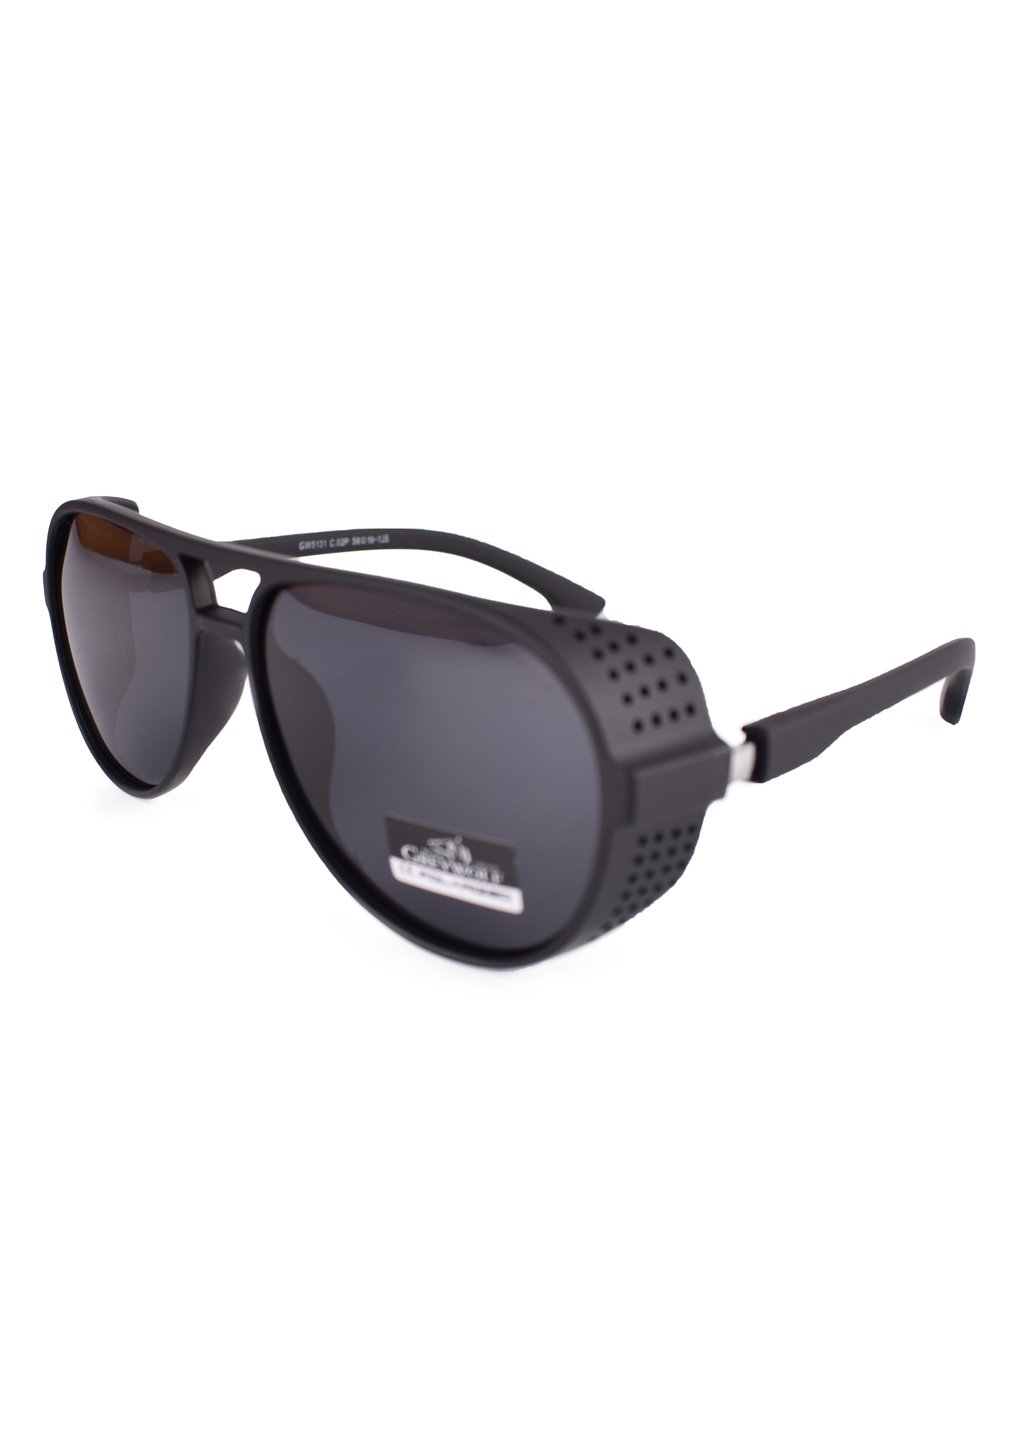 Купить Черные мужские солнцезащитные очки Gray Wolf с поряризацией GW5131 121017 в интернет-магазине